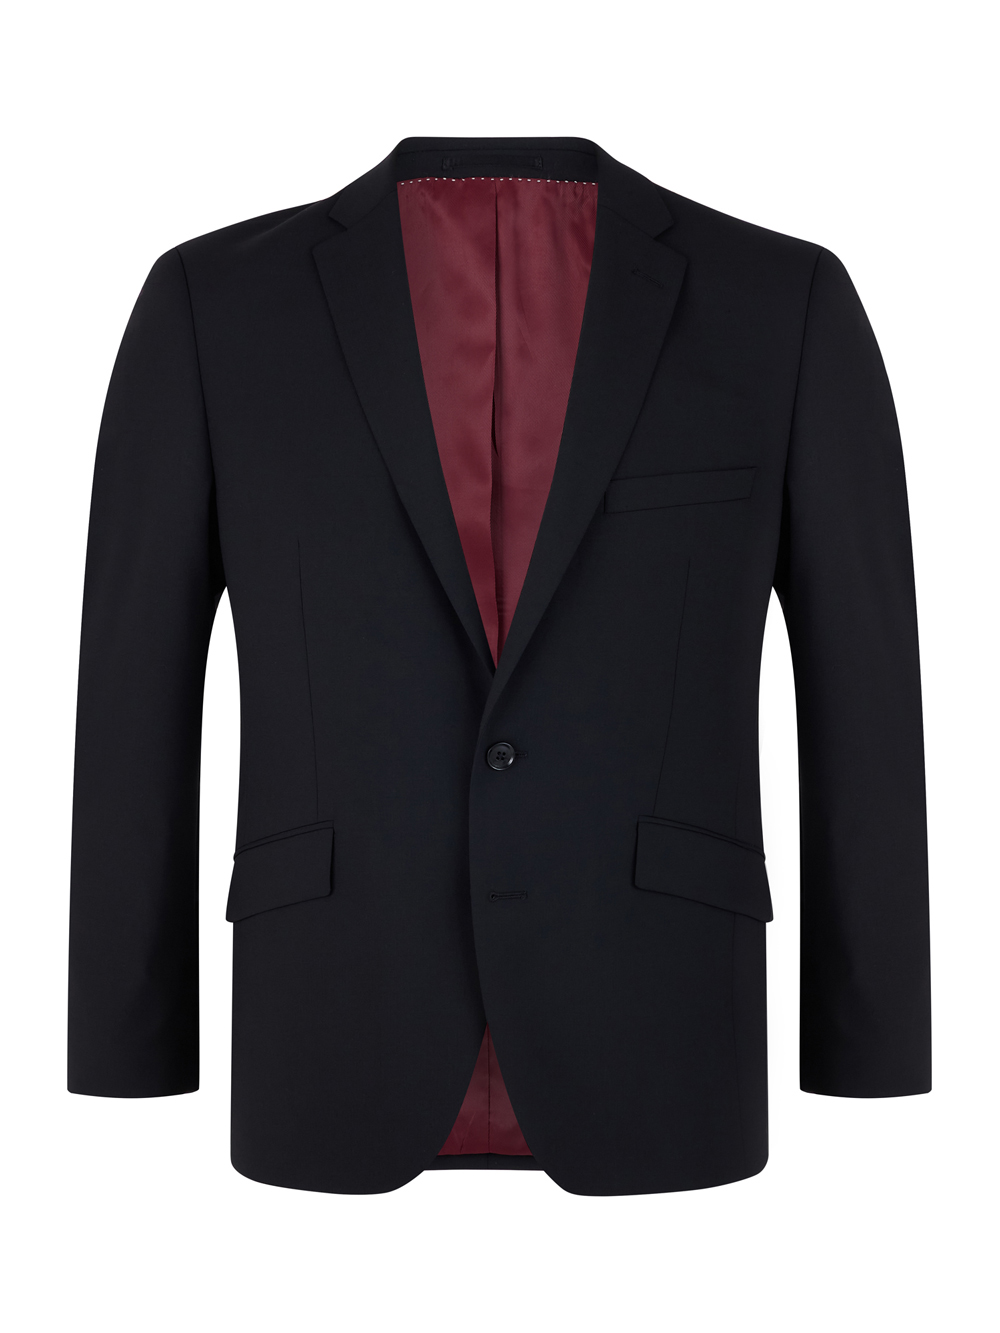 Daniel-Grahame-Black-Dale-Mix-Match-Suit-Jacket